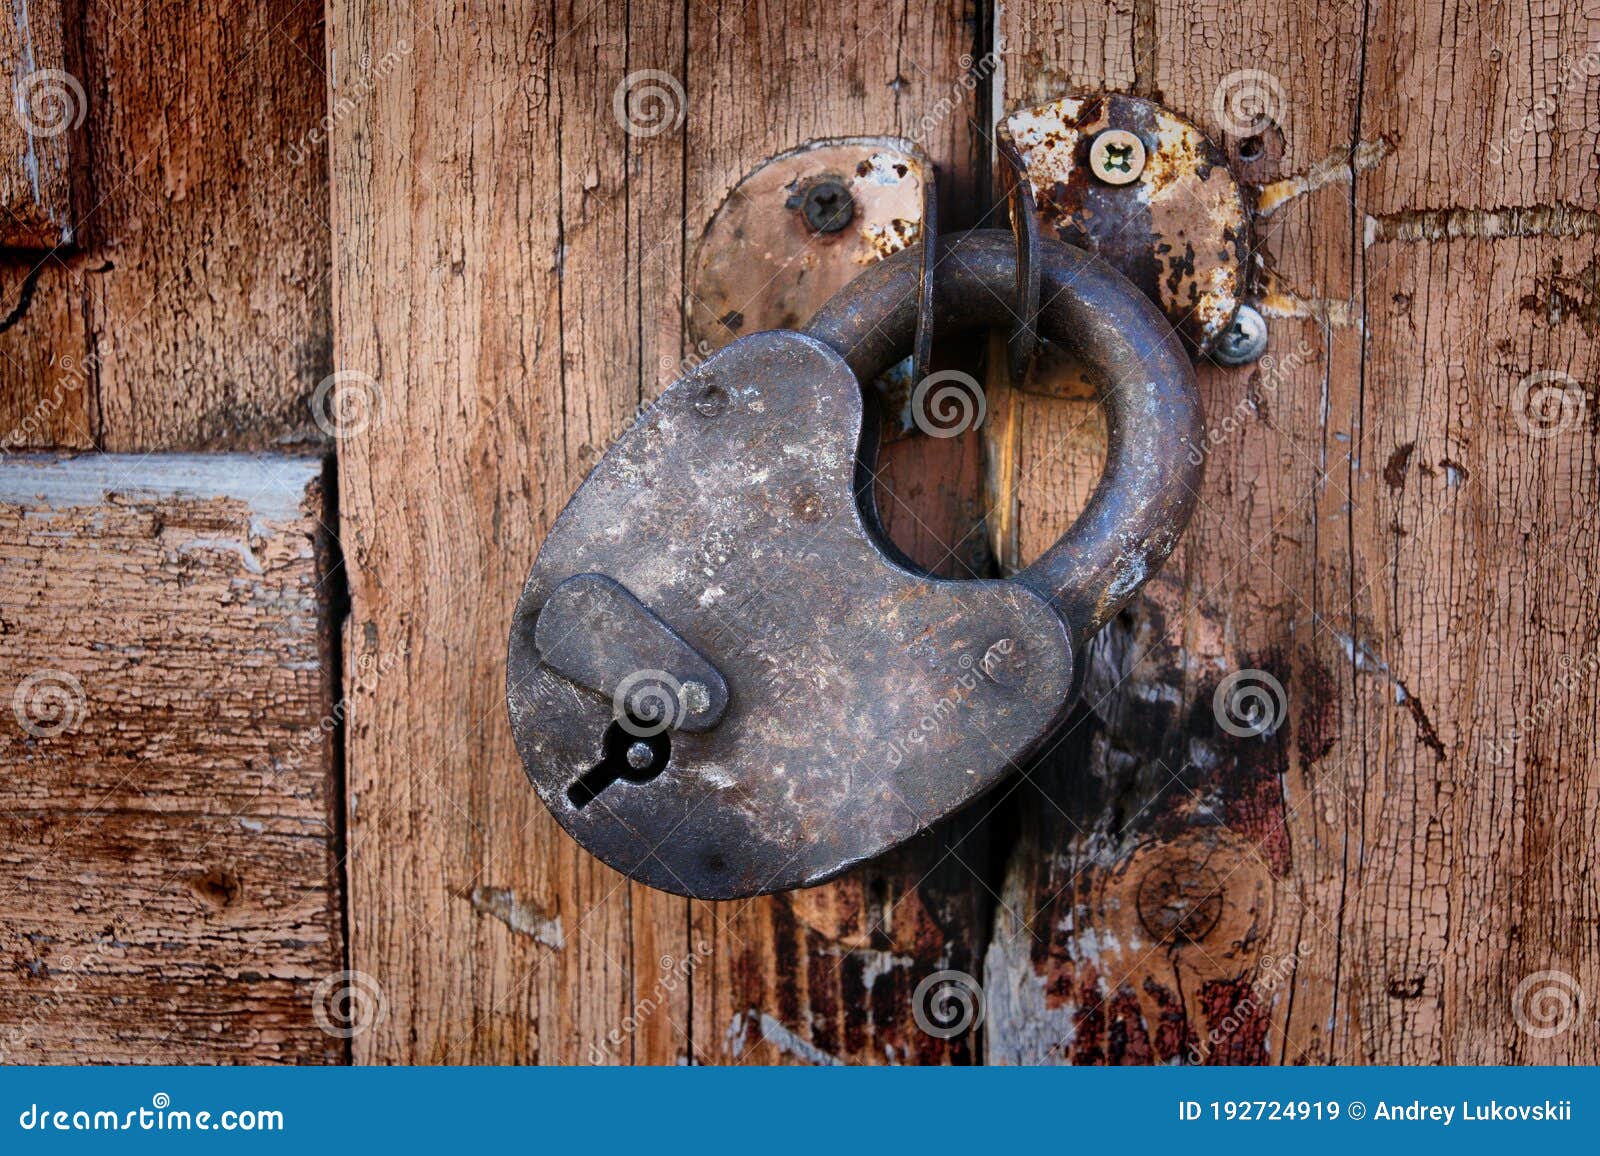 Türe mit schloss verriegelt - ein lizenzfreies Stock Foto von